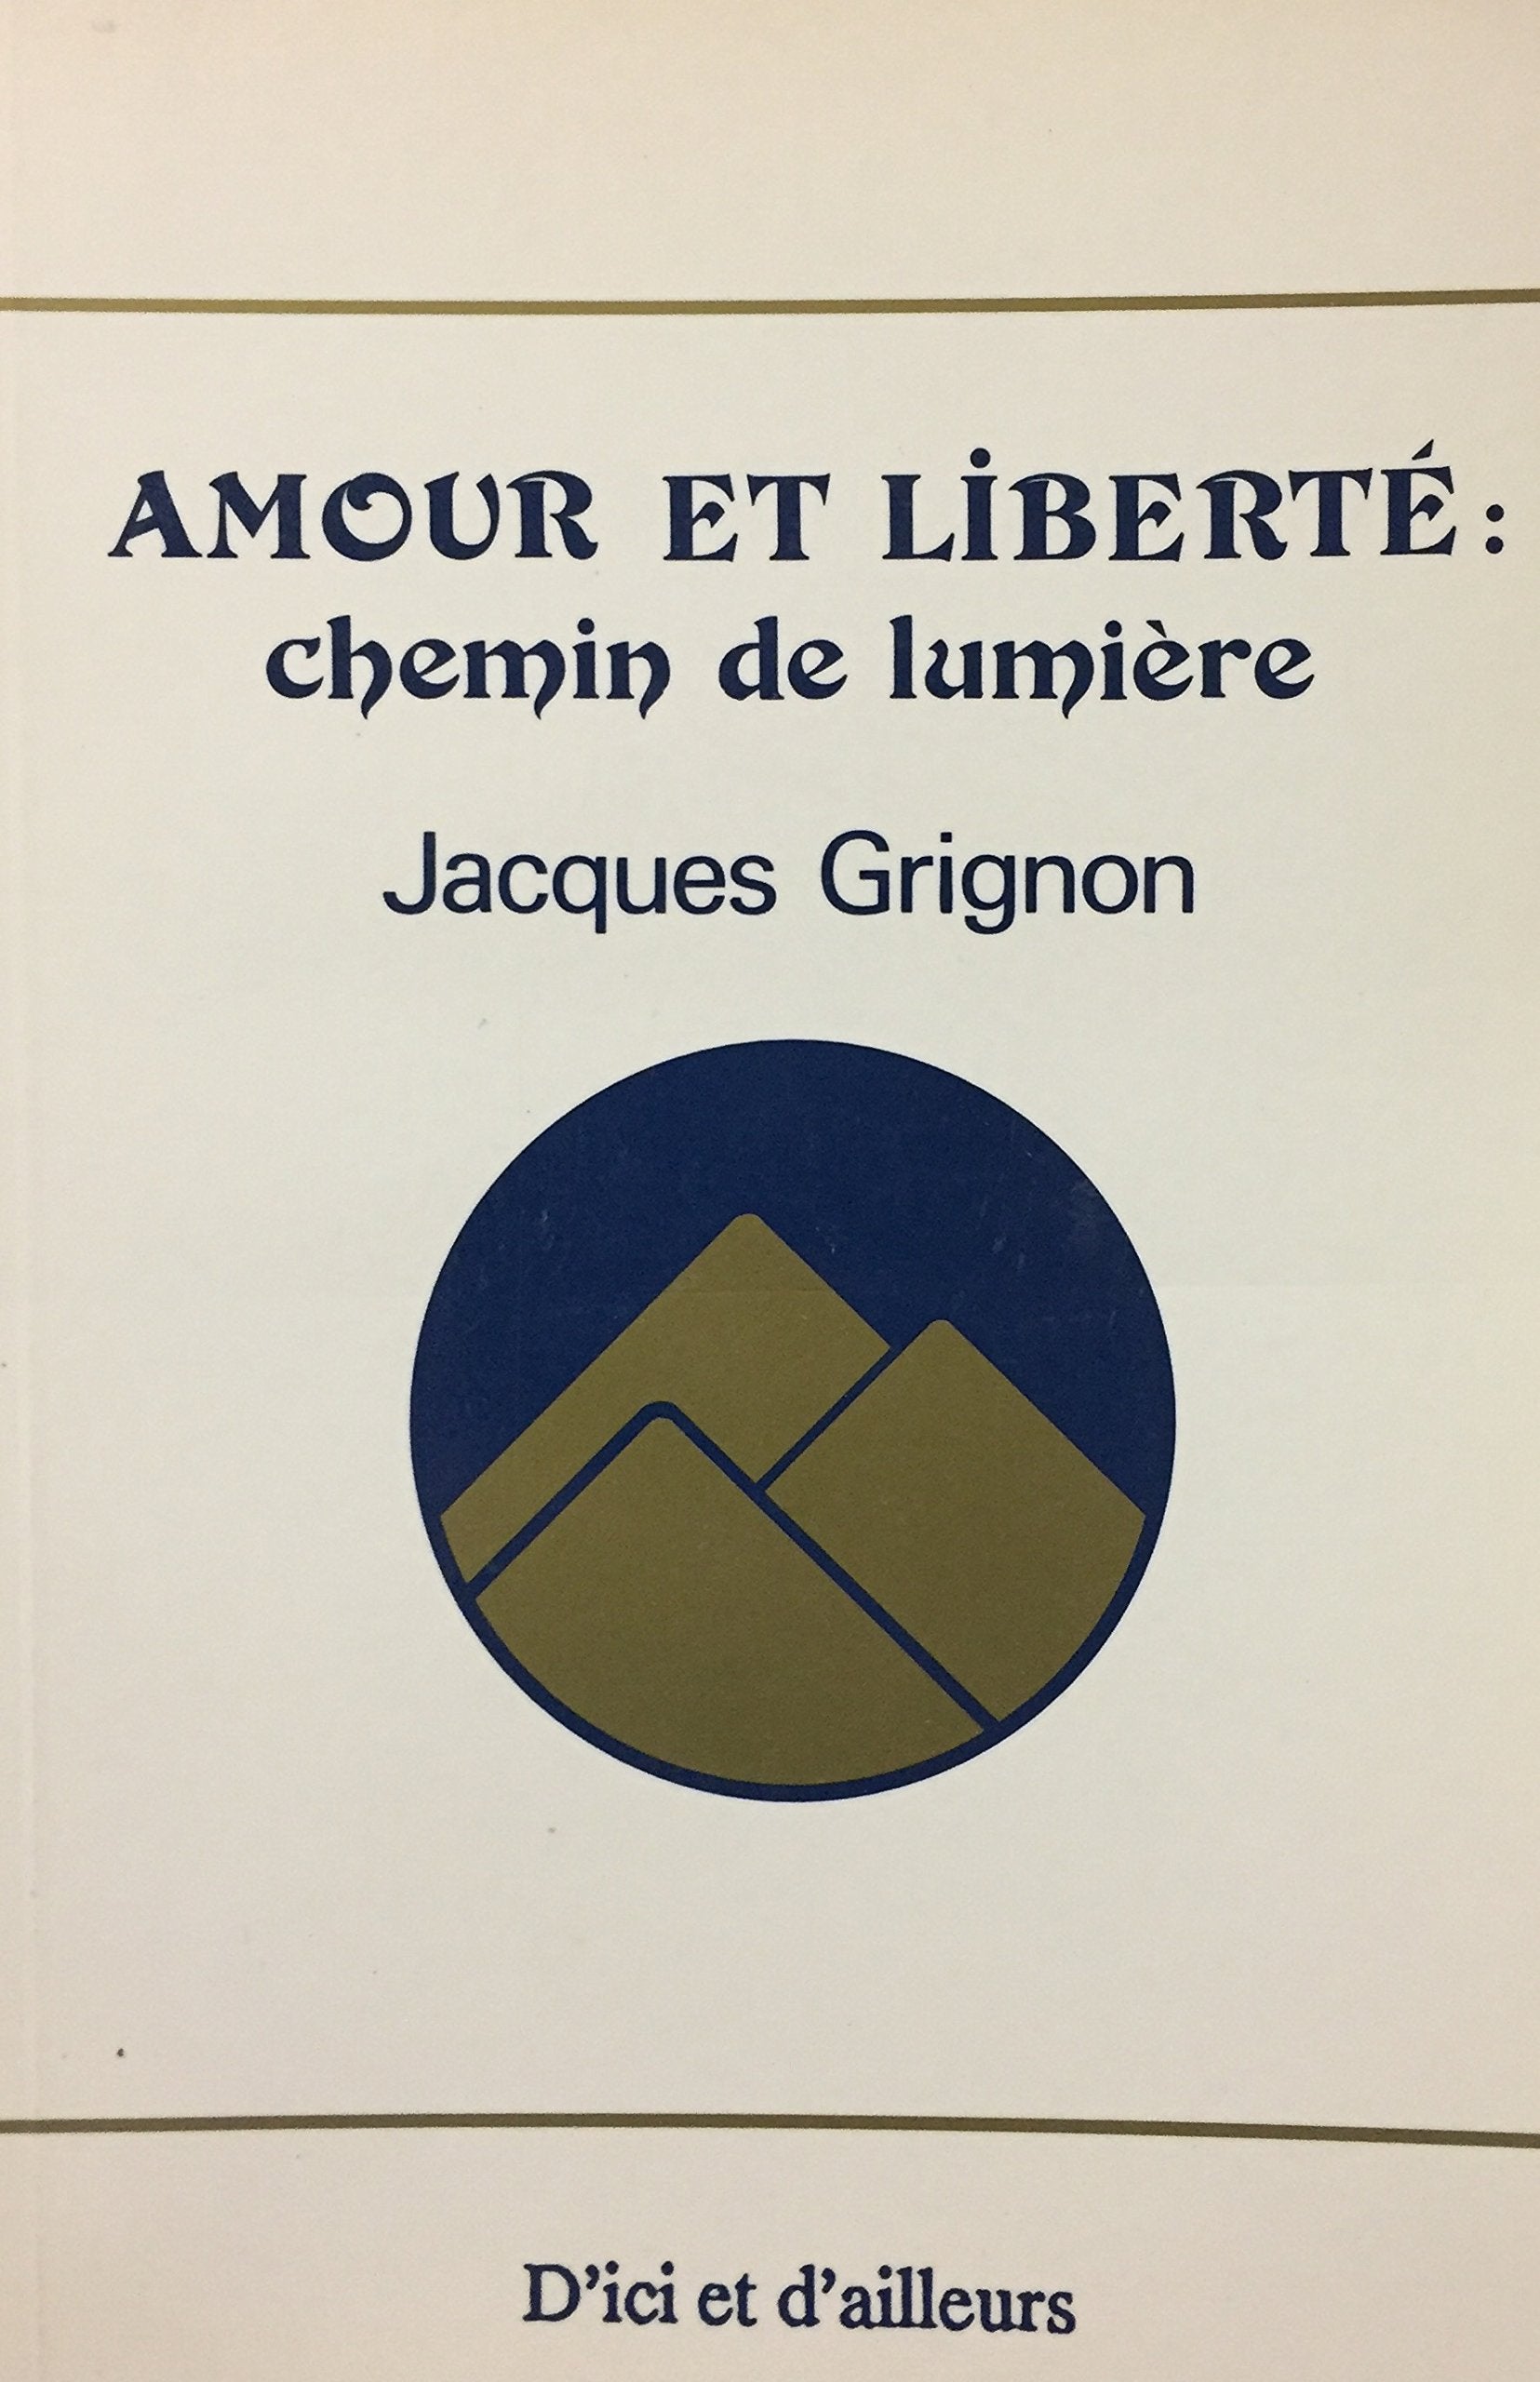 Livre ISBN 2921055066 Amour et liberté : chemin de lumière